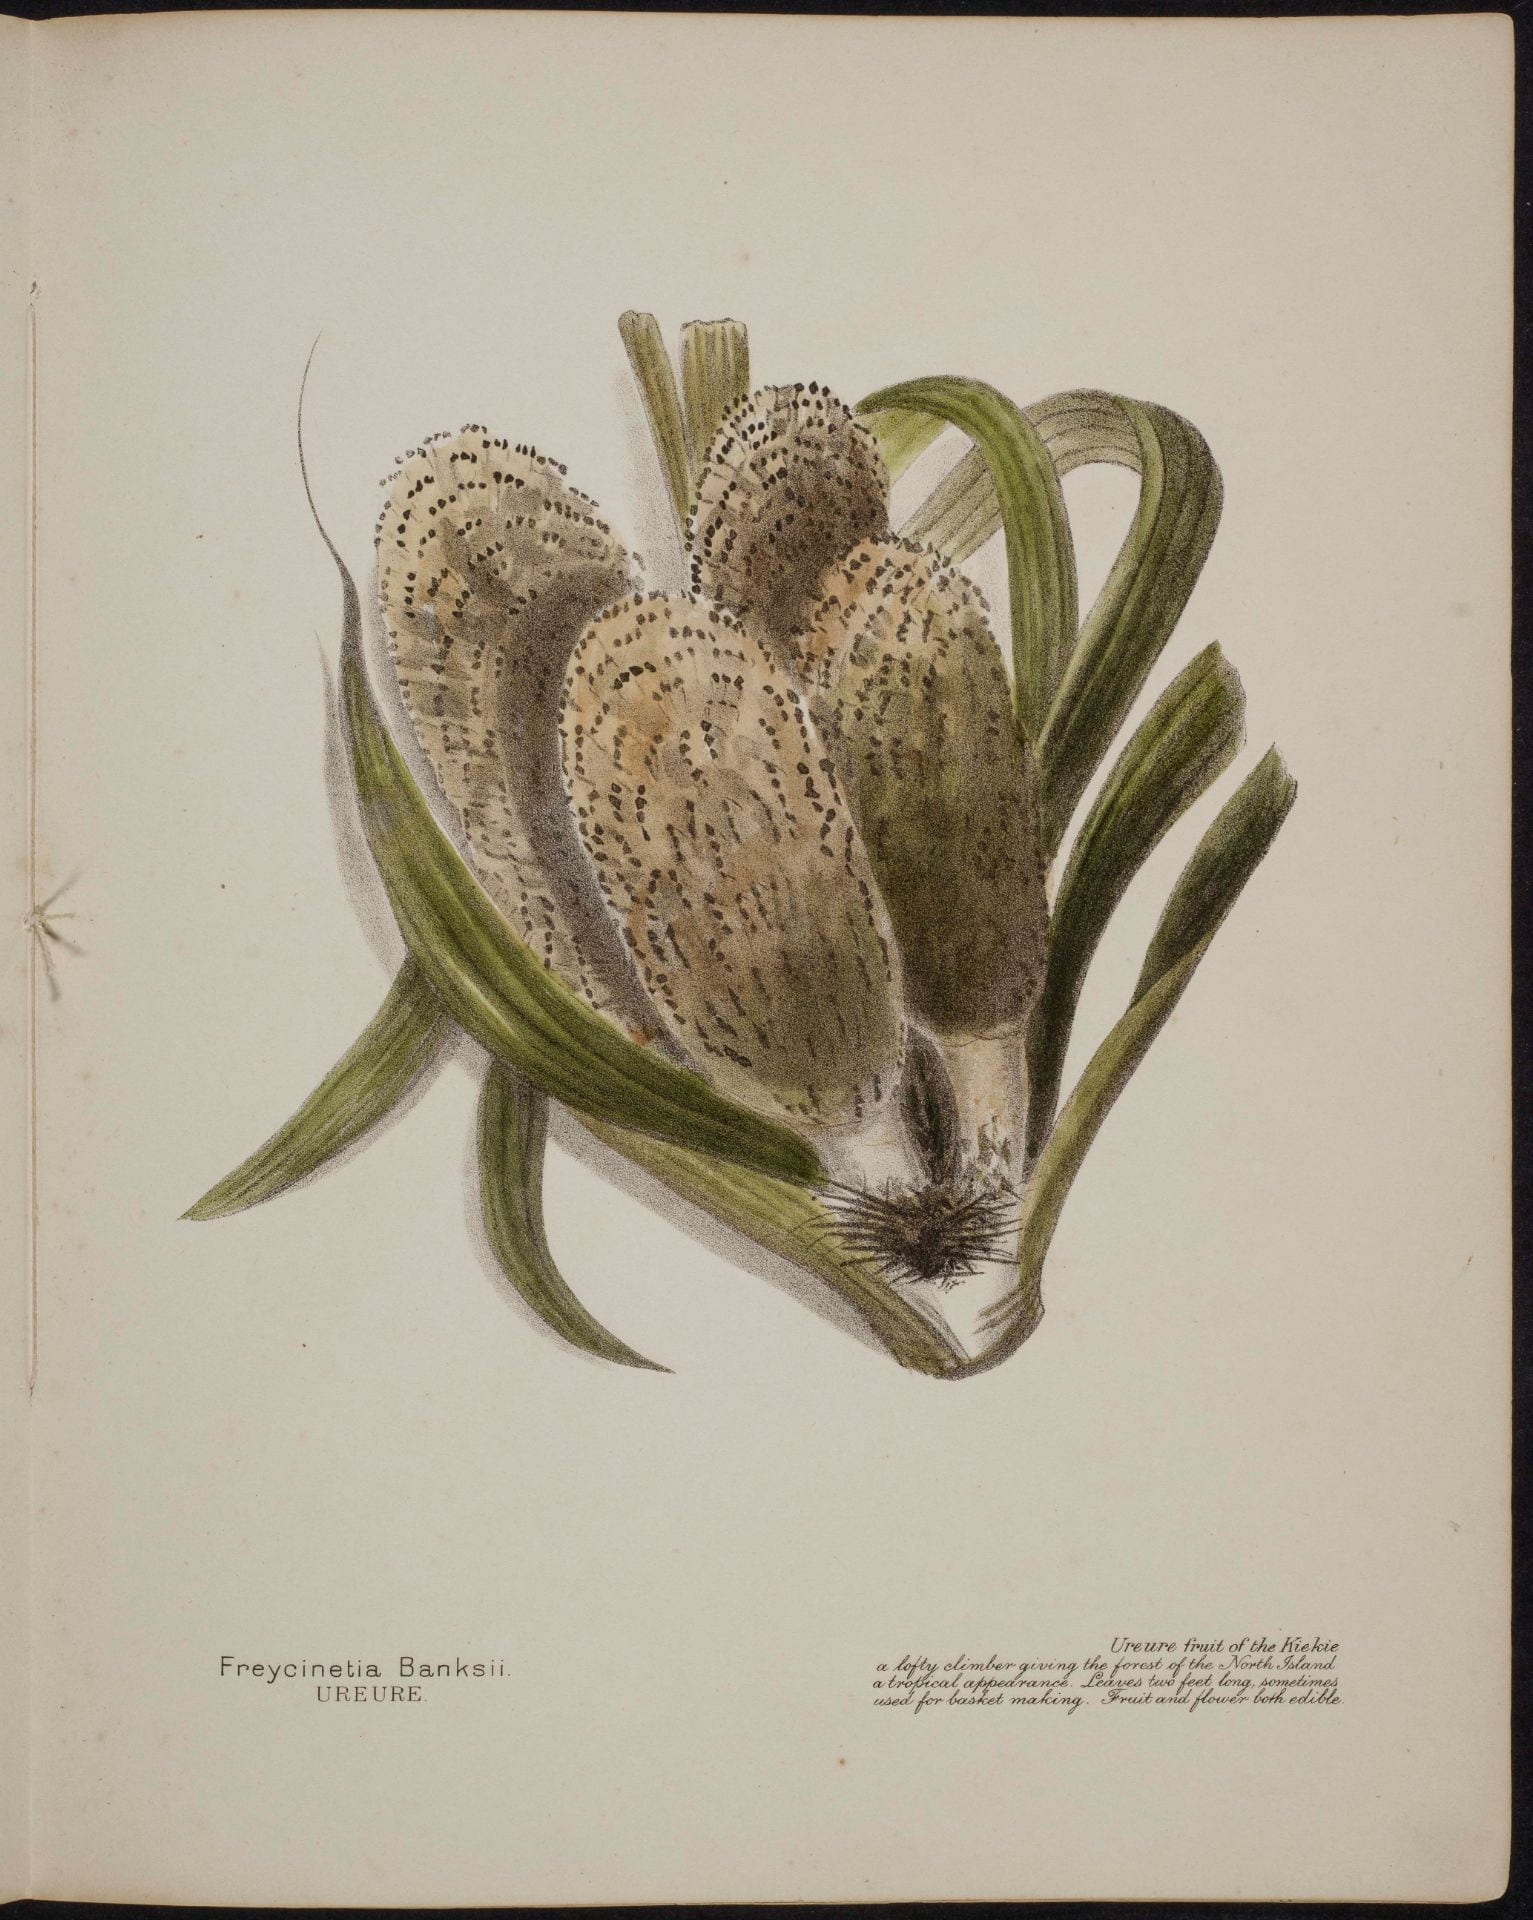 Freycinetia Banksii Ureure